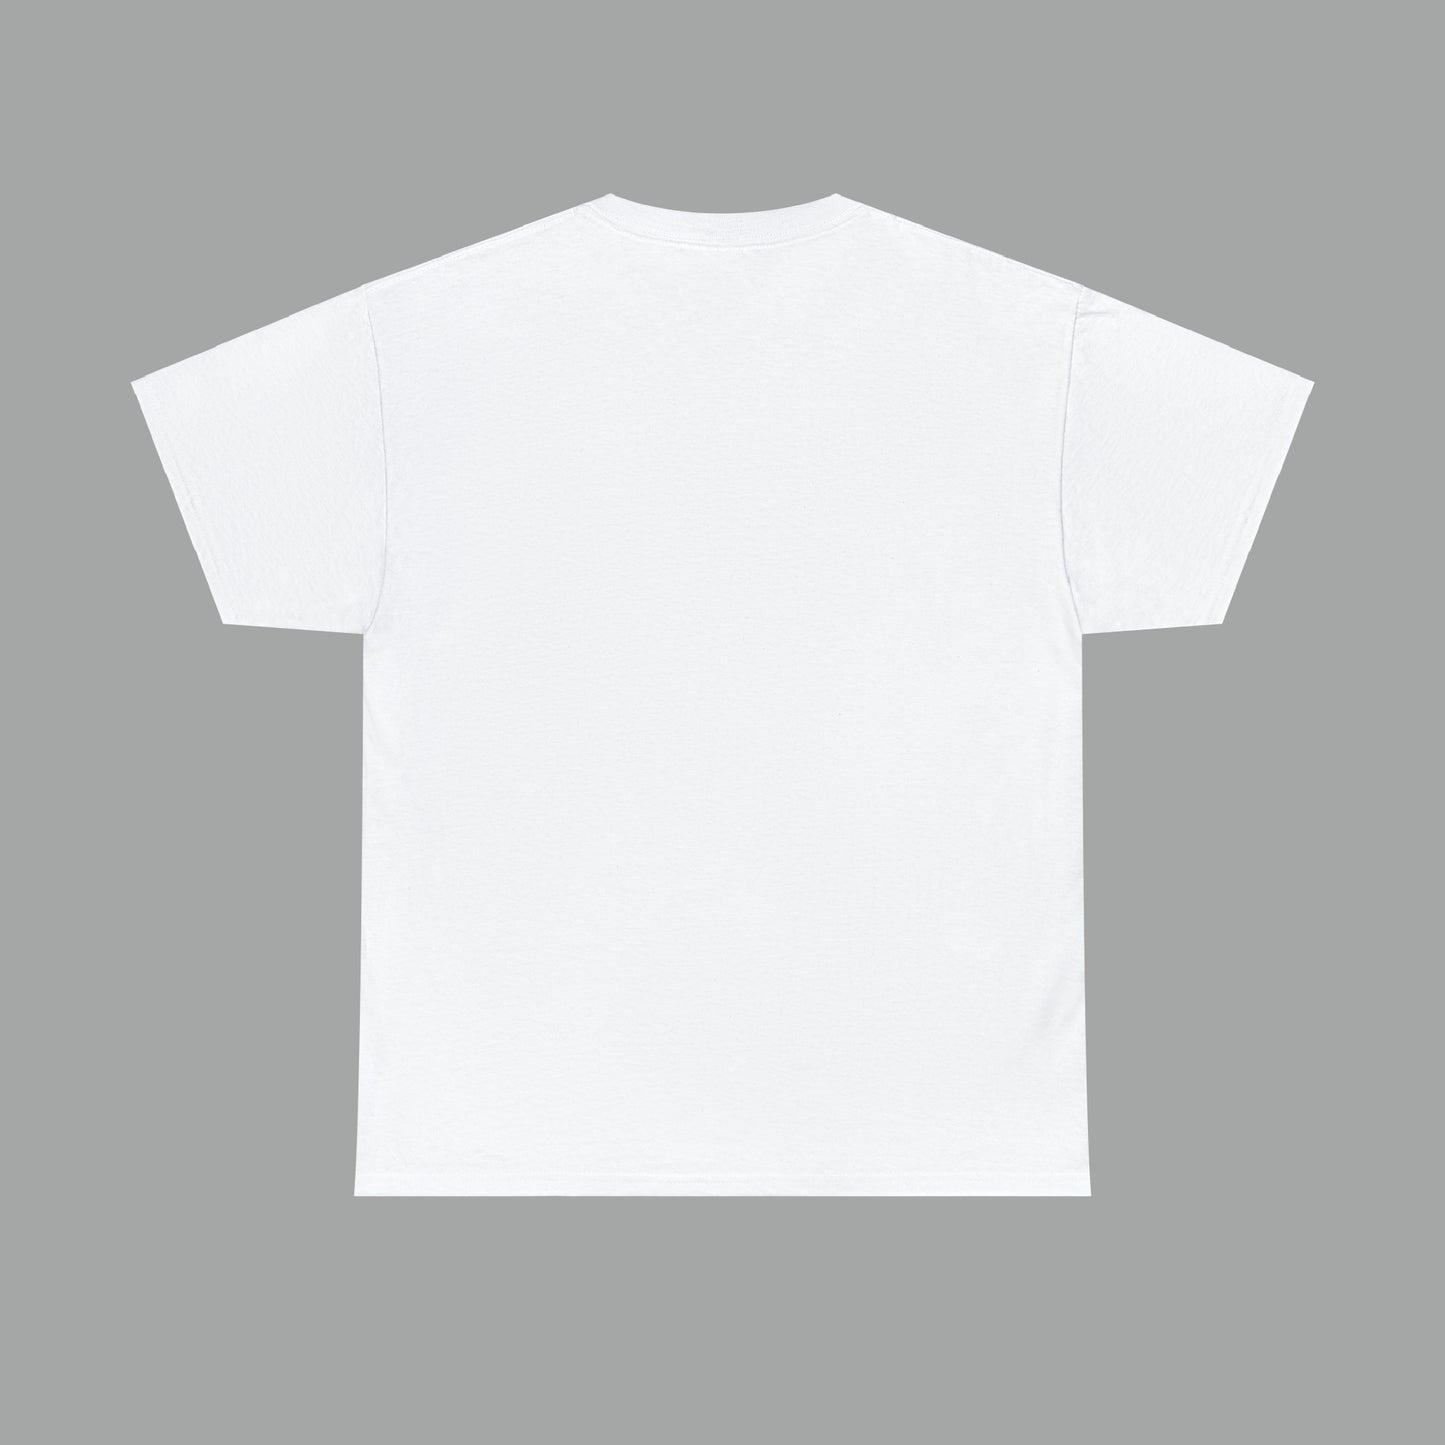 Mystique graphic T-shirt